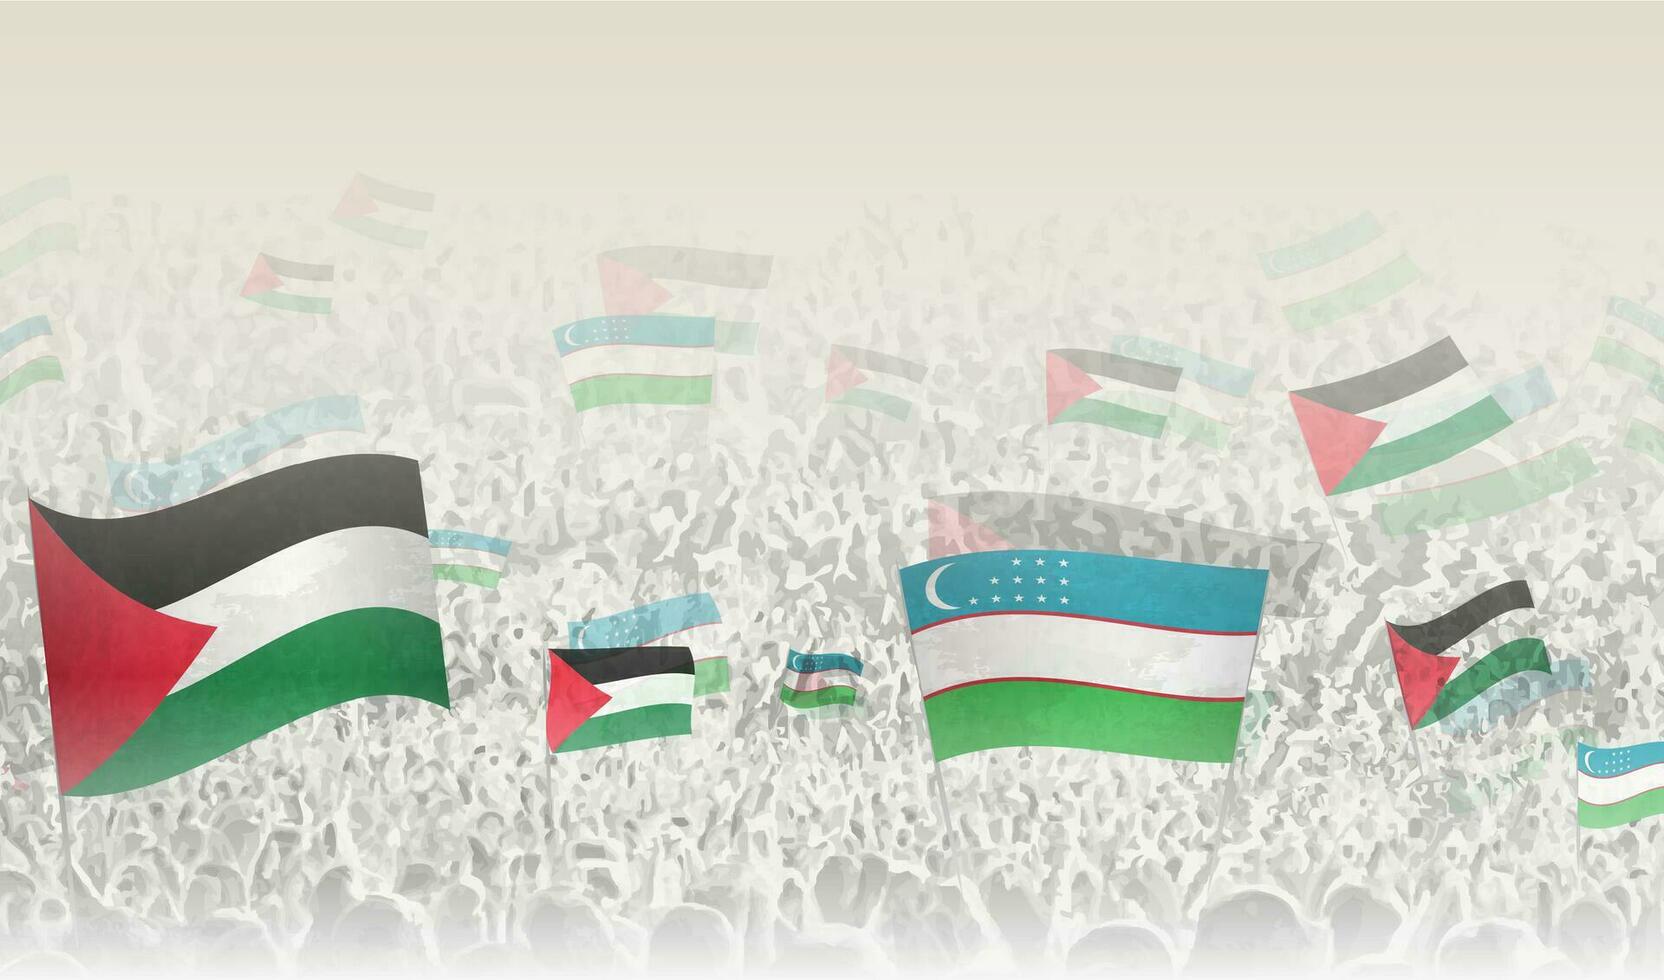 Palestina y Uzbekistán banderas en un multitud de aplausos gente. vector